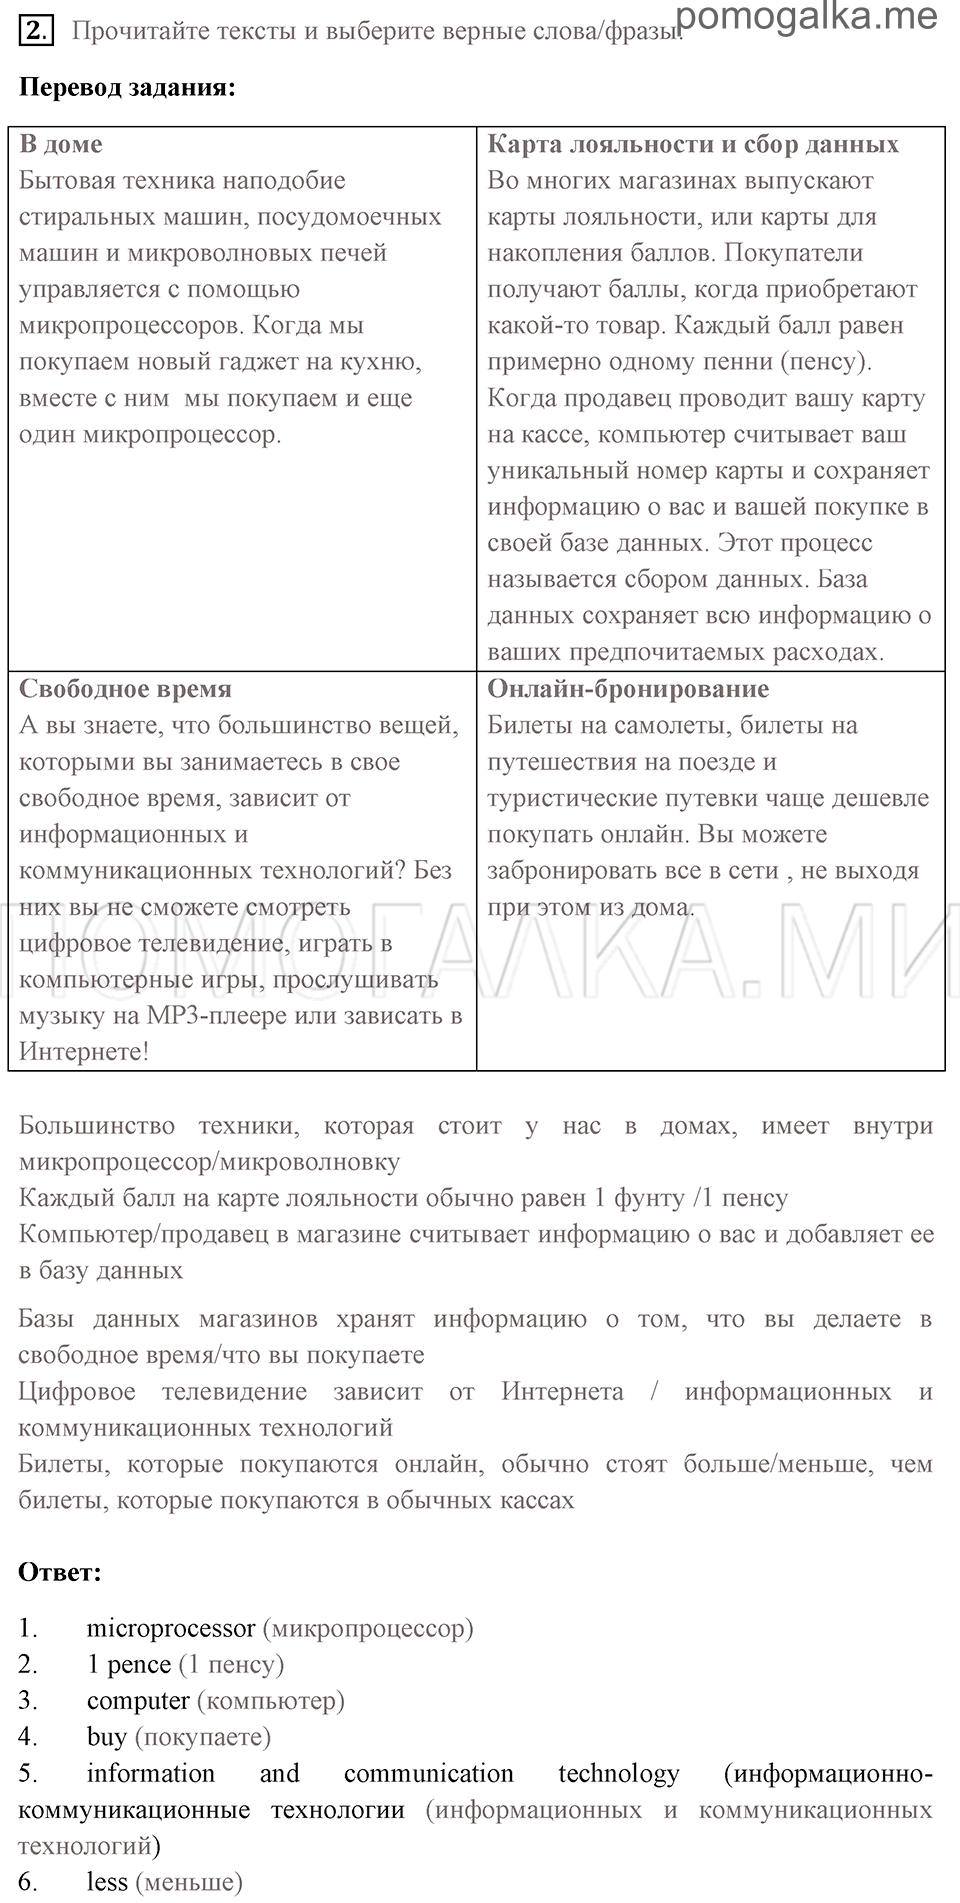 Страница 140 номер 2 английский язык 7 класс Комарова, Ларионова